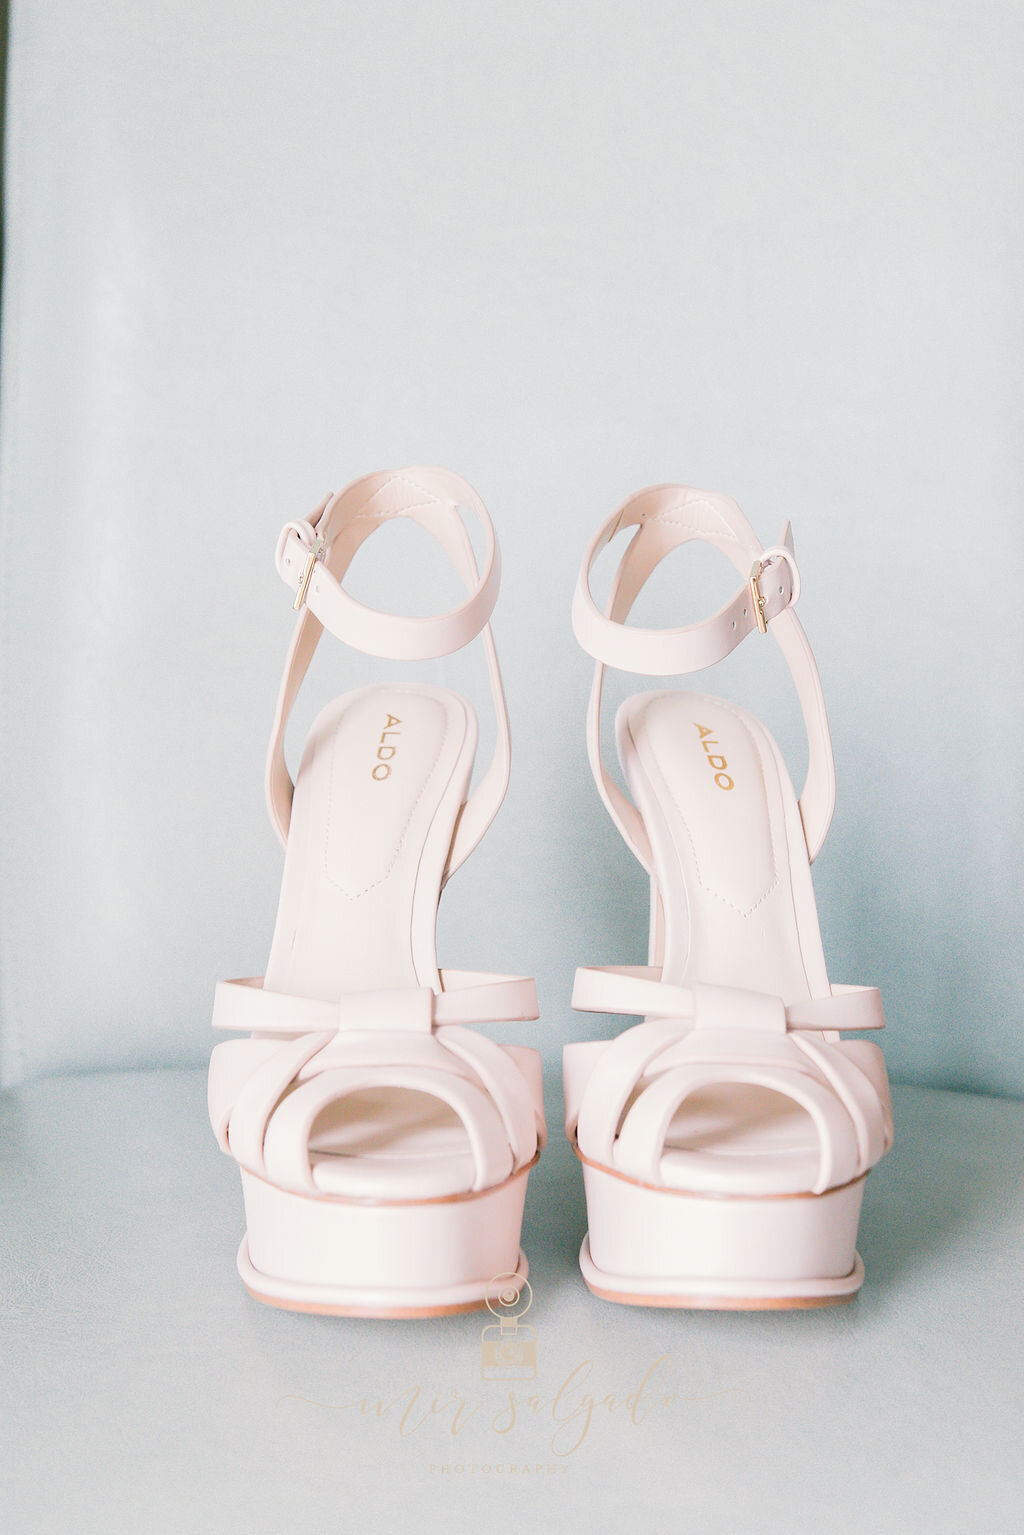 wedding-heels, aldo-pink-heels, pink-wedding-heels, pastel-wedding-heels, wedding-shoes